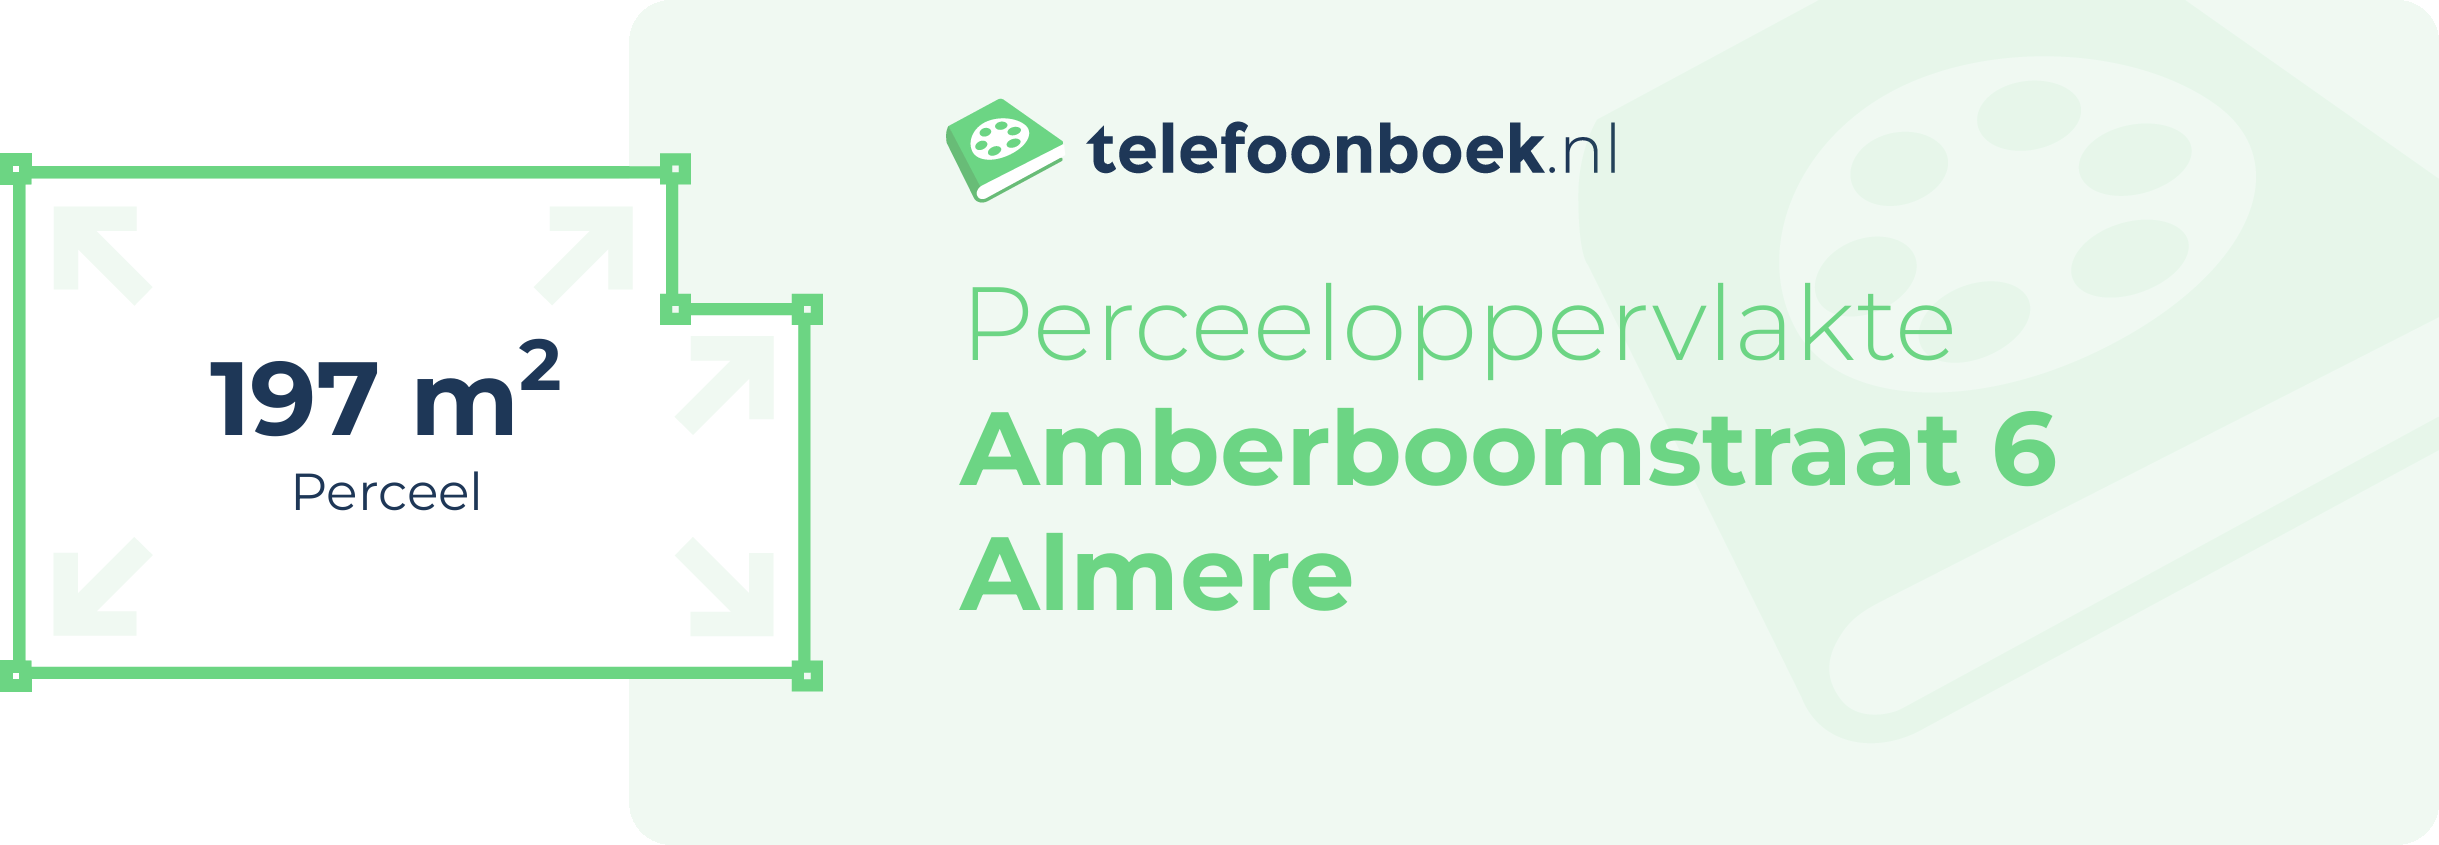 Perceeloppervlakte Amberboomstraat 6 Almere